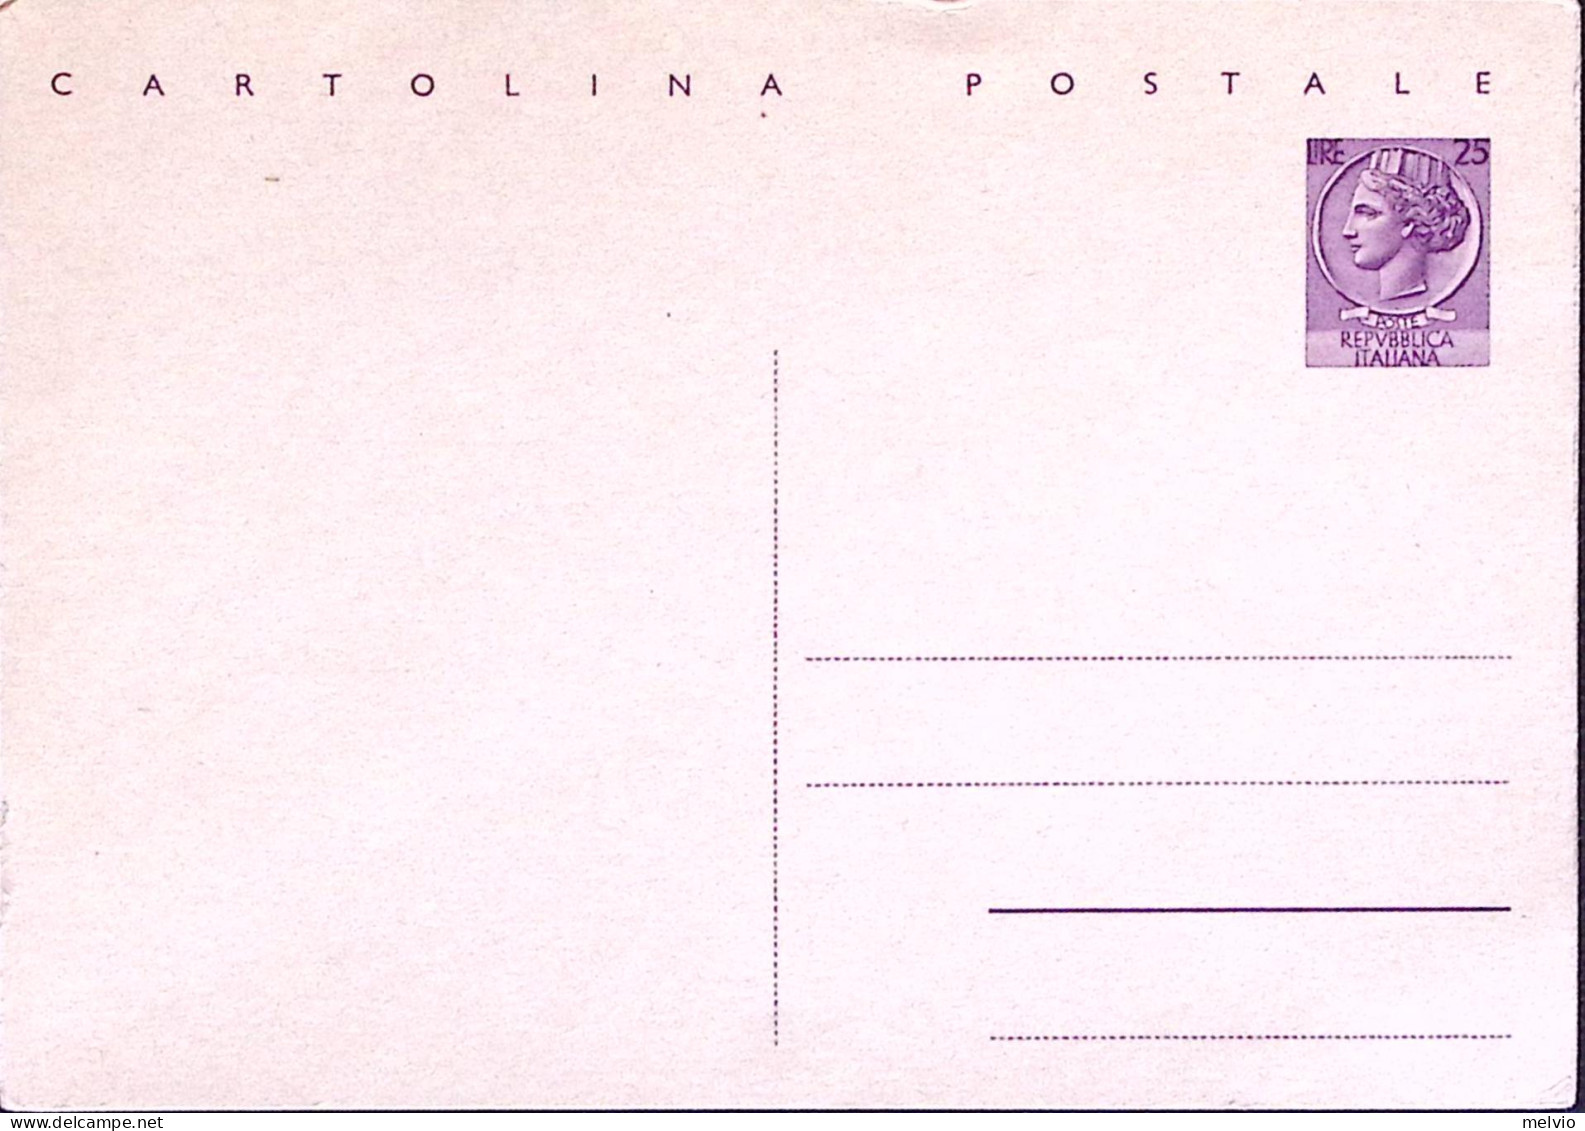 1959-Cartolina Postale Lire 25 Nuova - Stamped Stationery